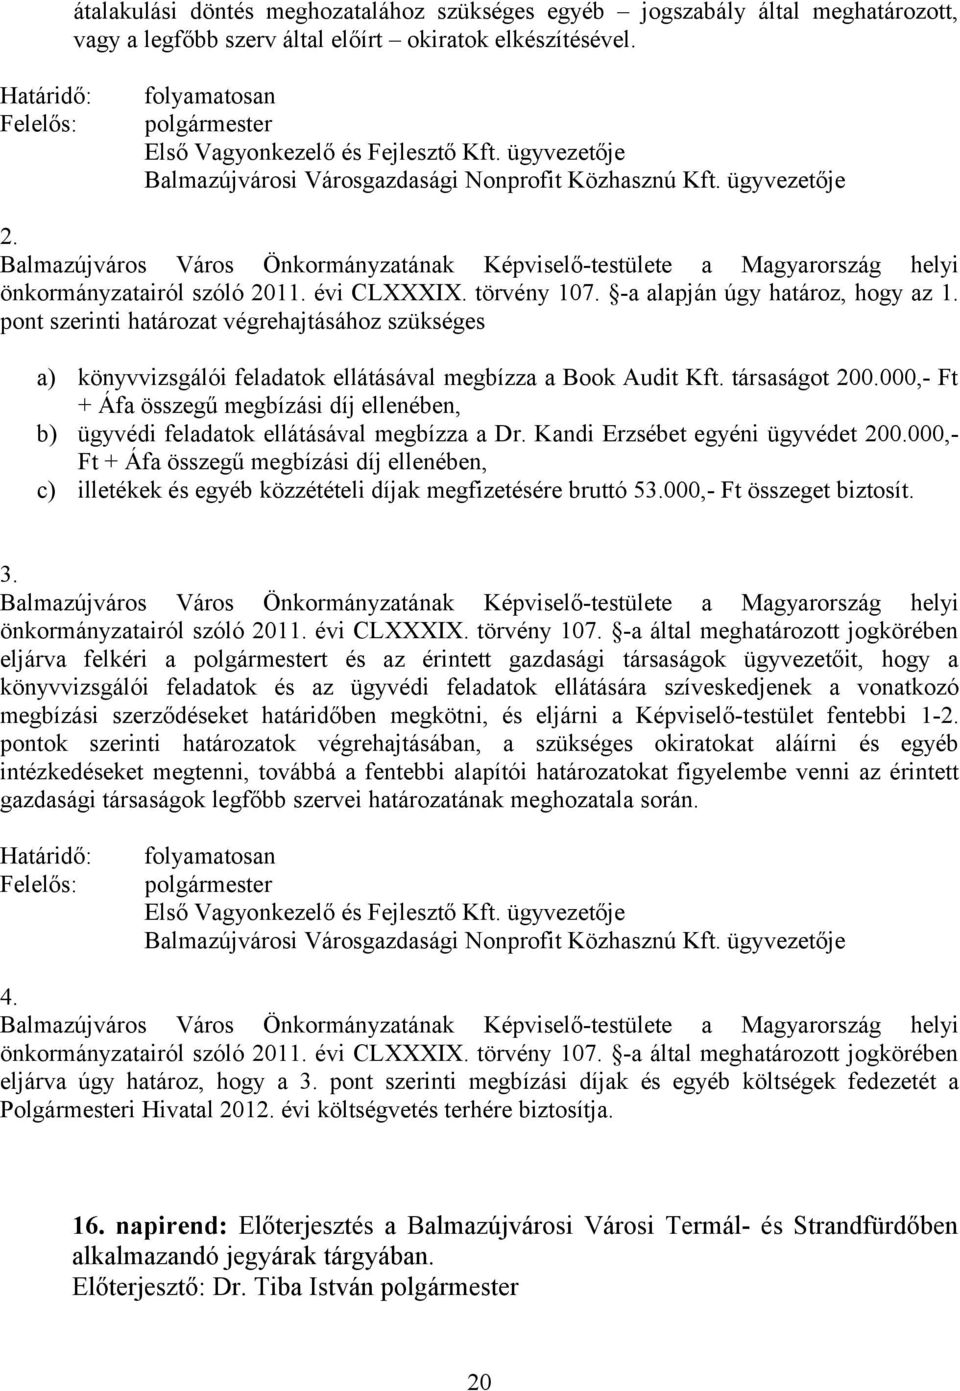 Balmazújváros Város Önkormányzatának Képviselő-testülete a Magyarország helyi önkormányzatairól szóló 2011. évi CLXXXIX. törvény 107. -a alapján úgy határoz, hogy az 1.